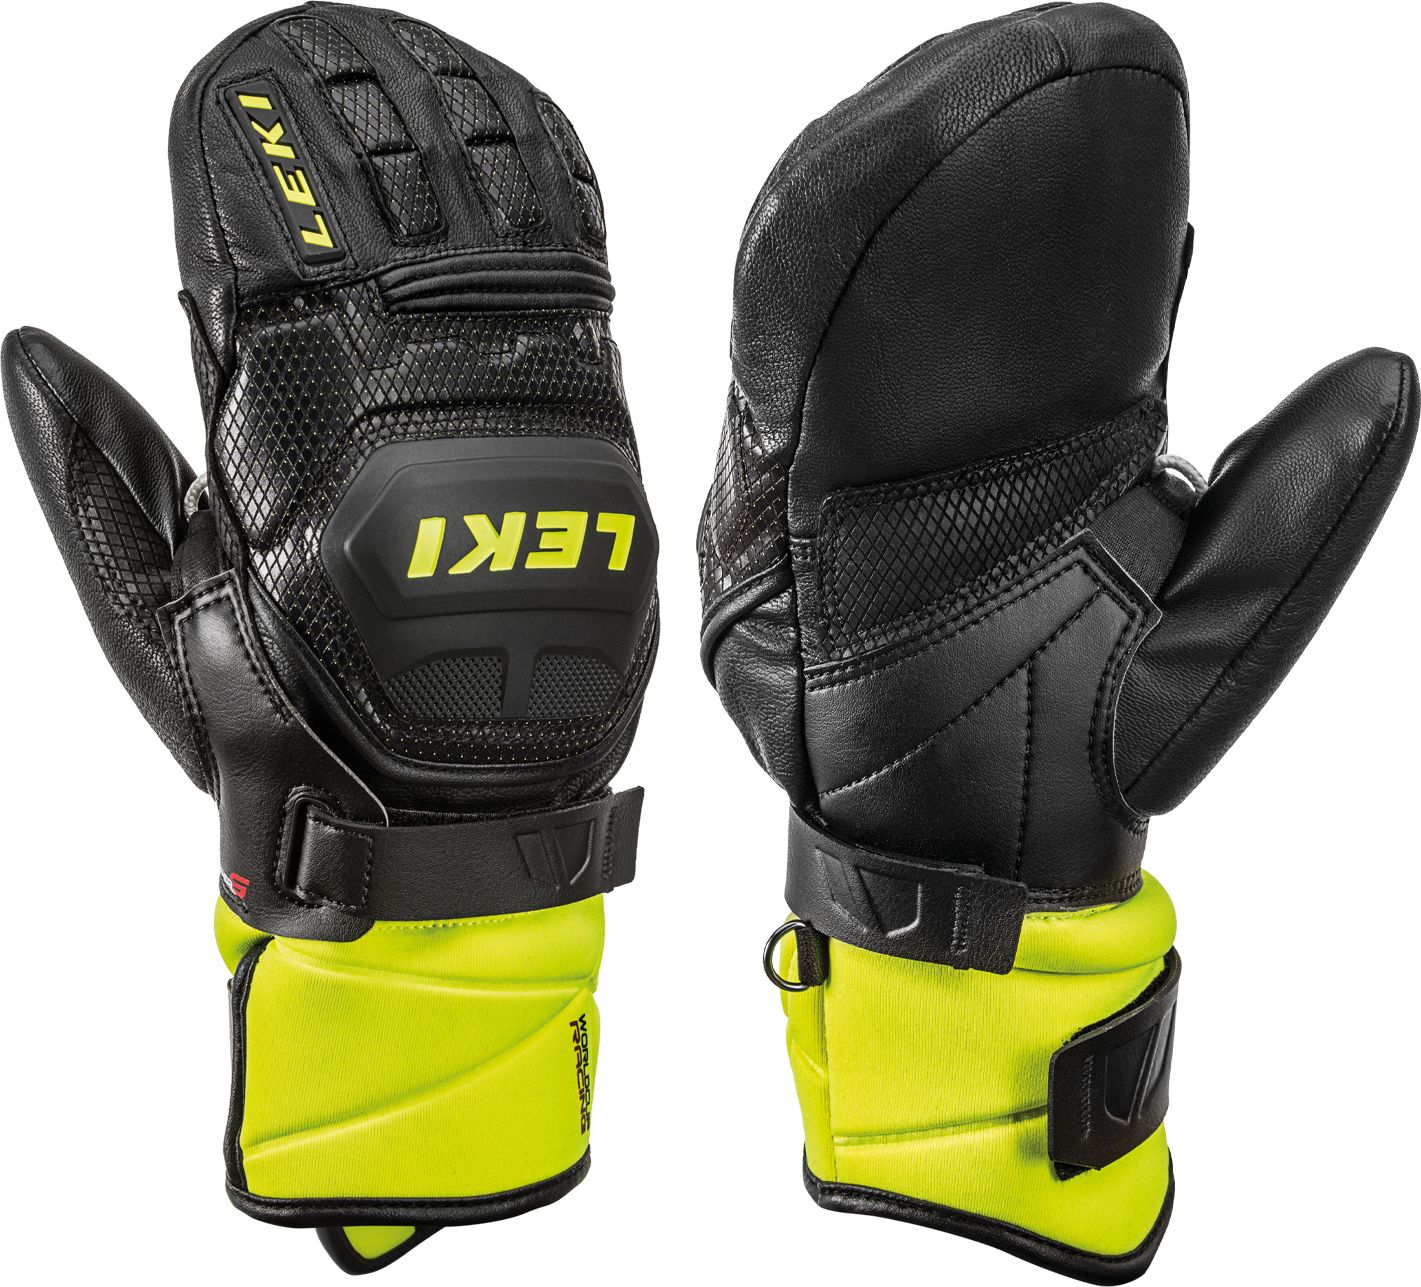 Leki Worldcup Race Flex S Junior Mitt lemon ski gloves. 8.0 cimdi